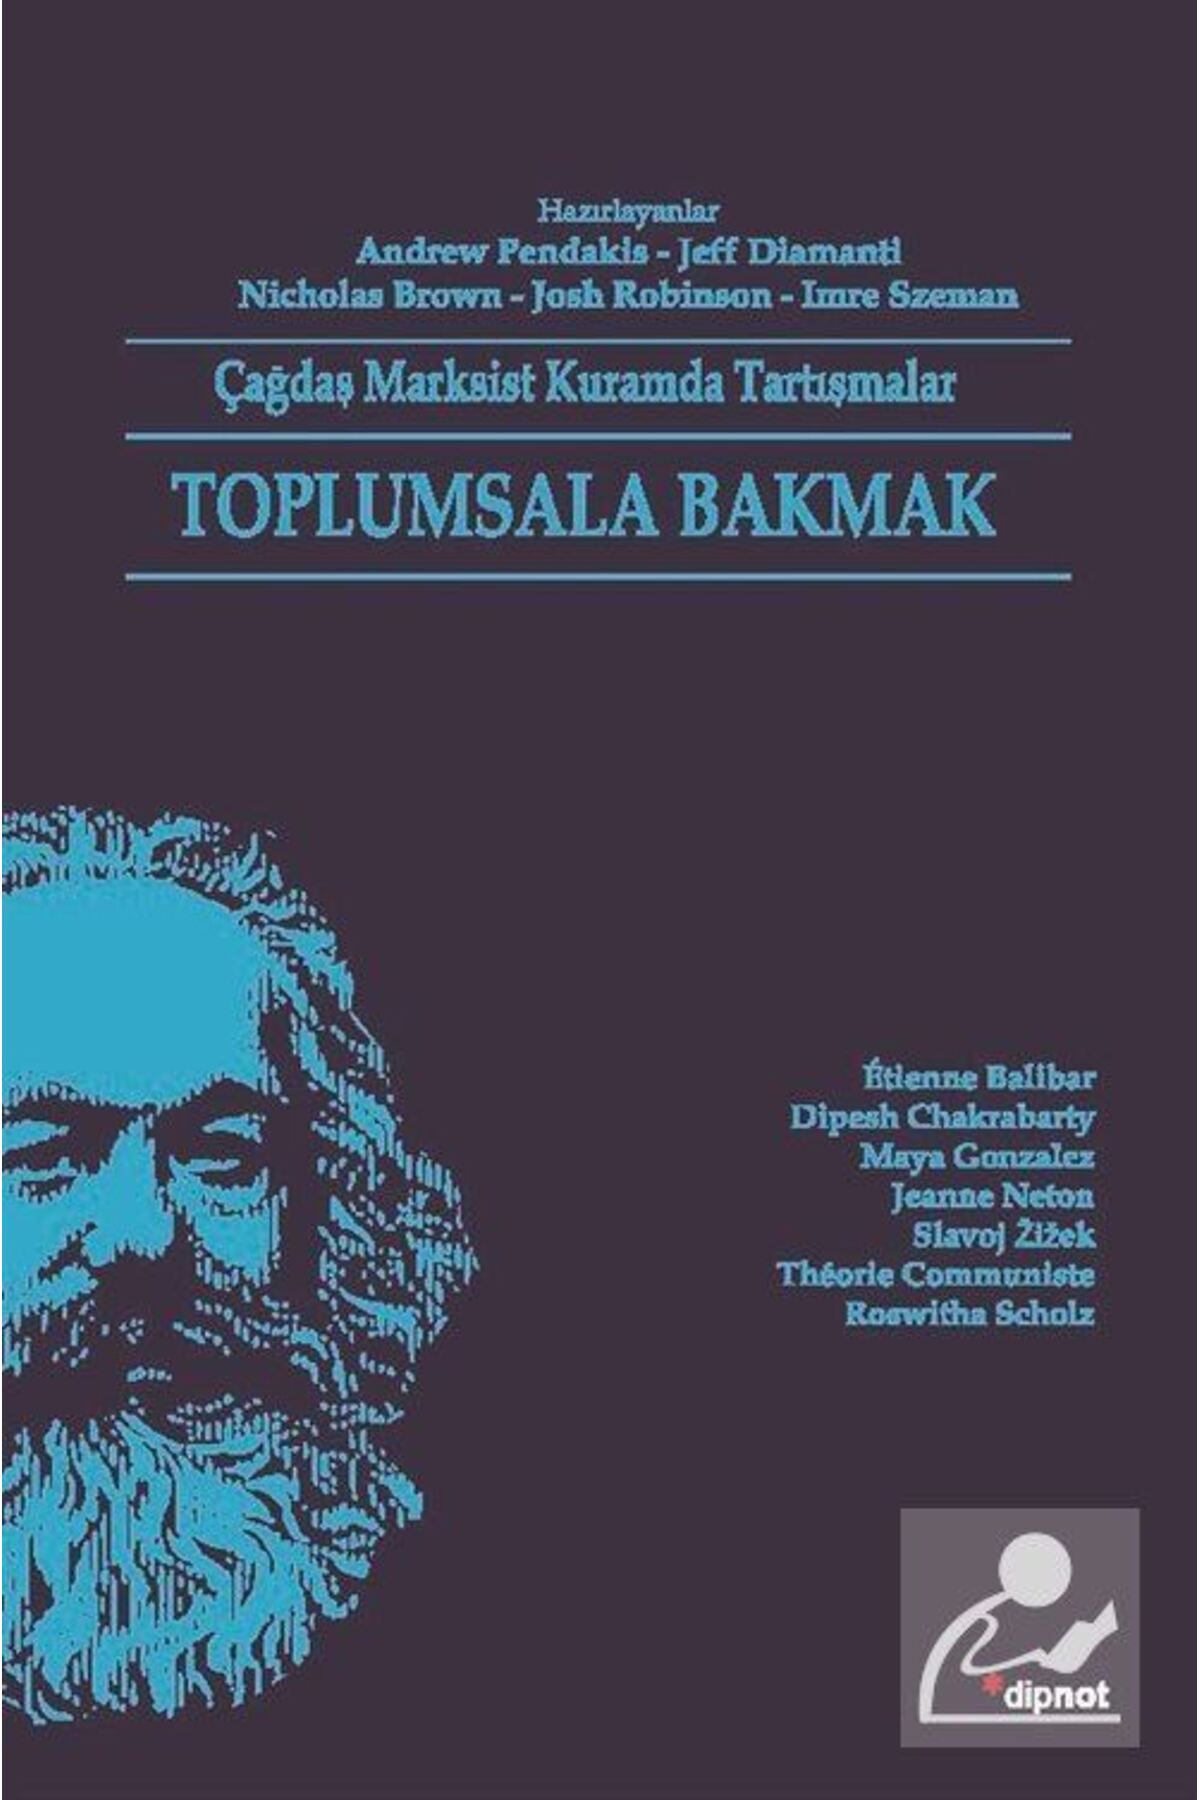 Dipnot Yayınları Toplumsala Bakmak & Çağdaş Marksist Kuramda Tartışmalar